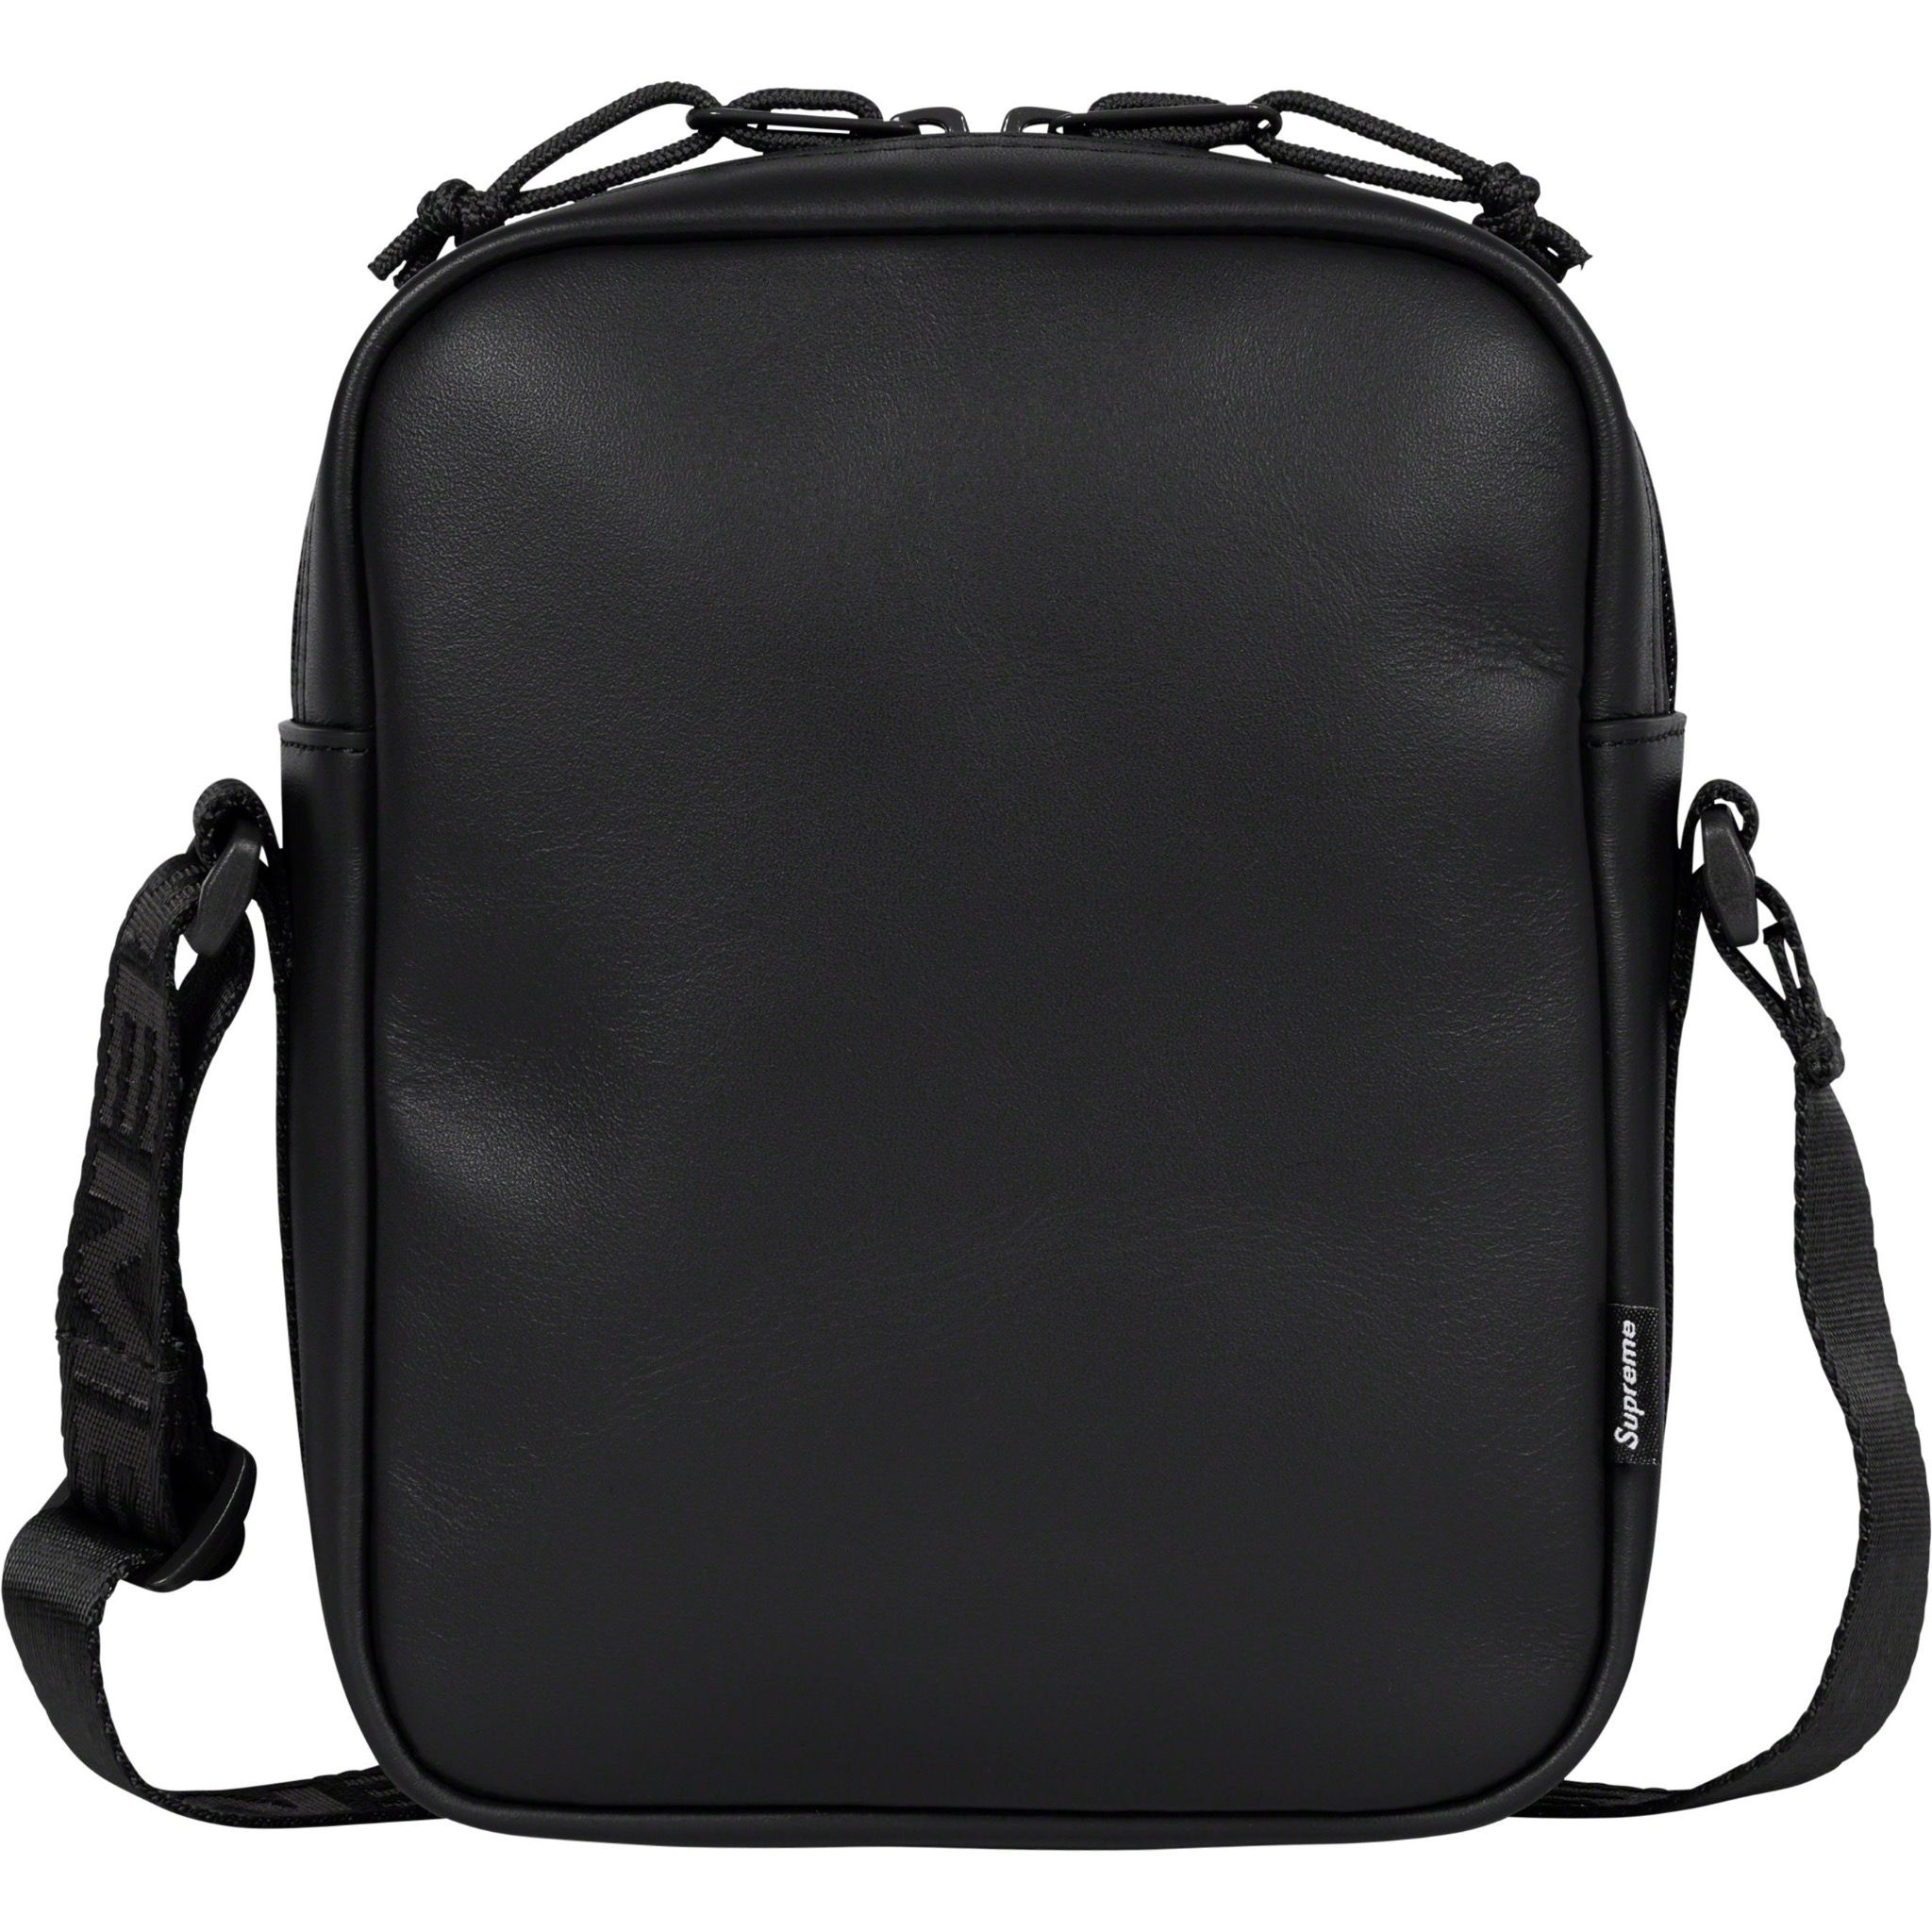  Supreme Leather Shoulder Bag - Black 